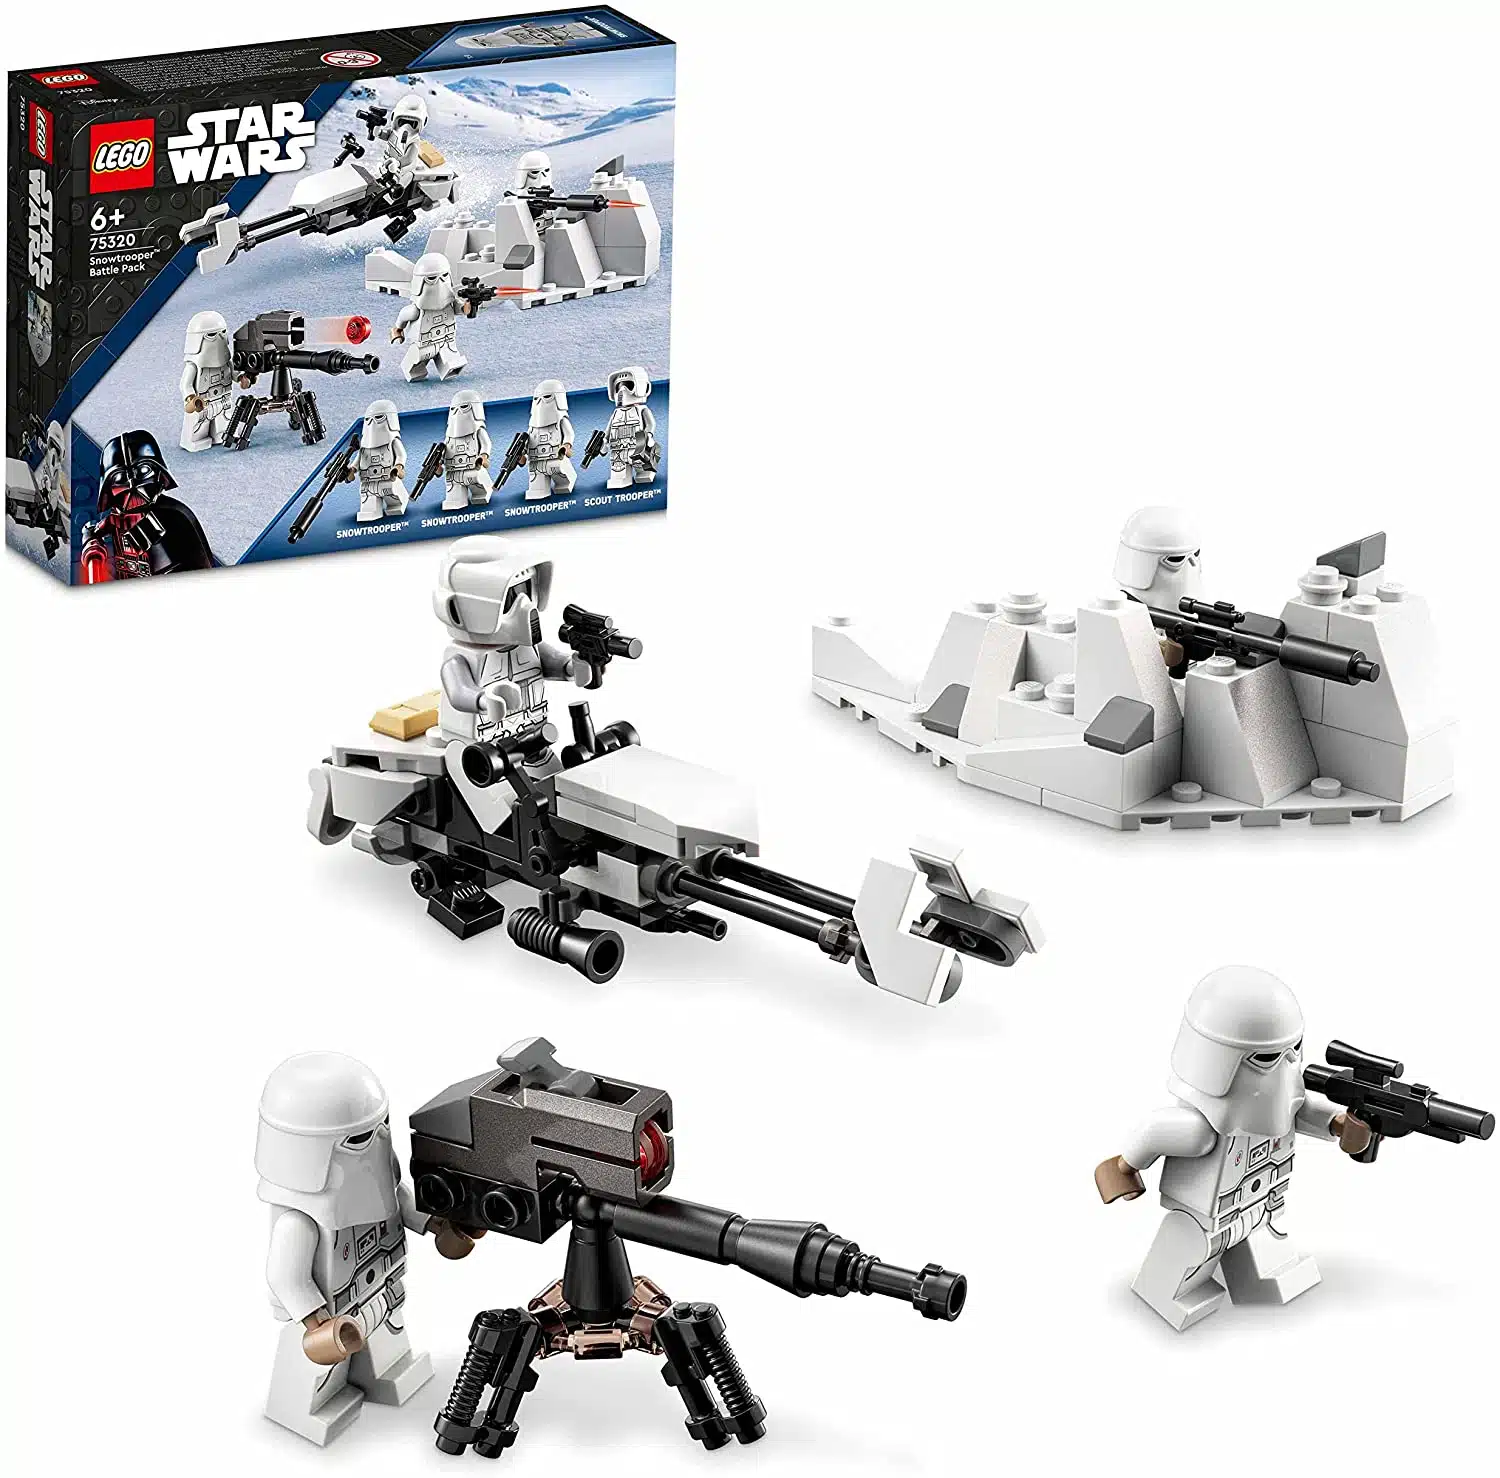  LEGO 75320 Star Wars Snowtrooper Battle Pack mit 4 Figuren, Waffen und Düsenschlitten